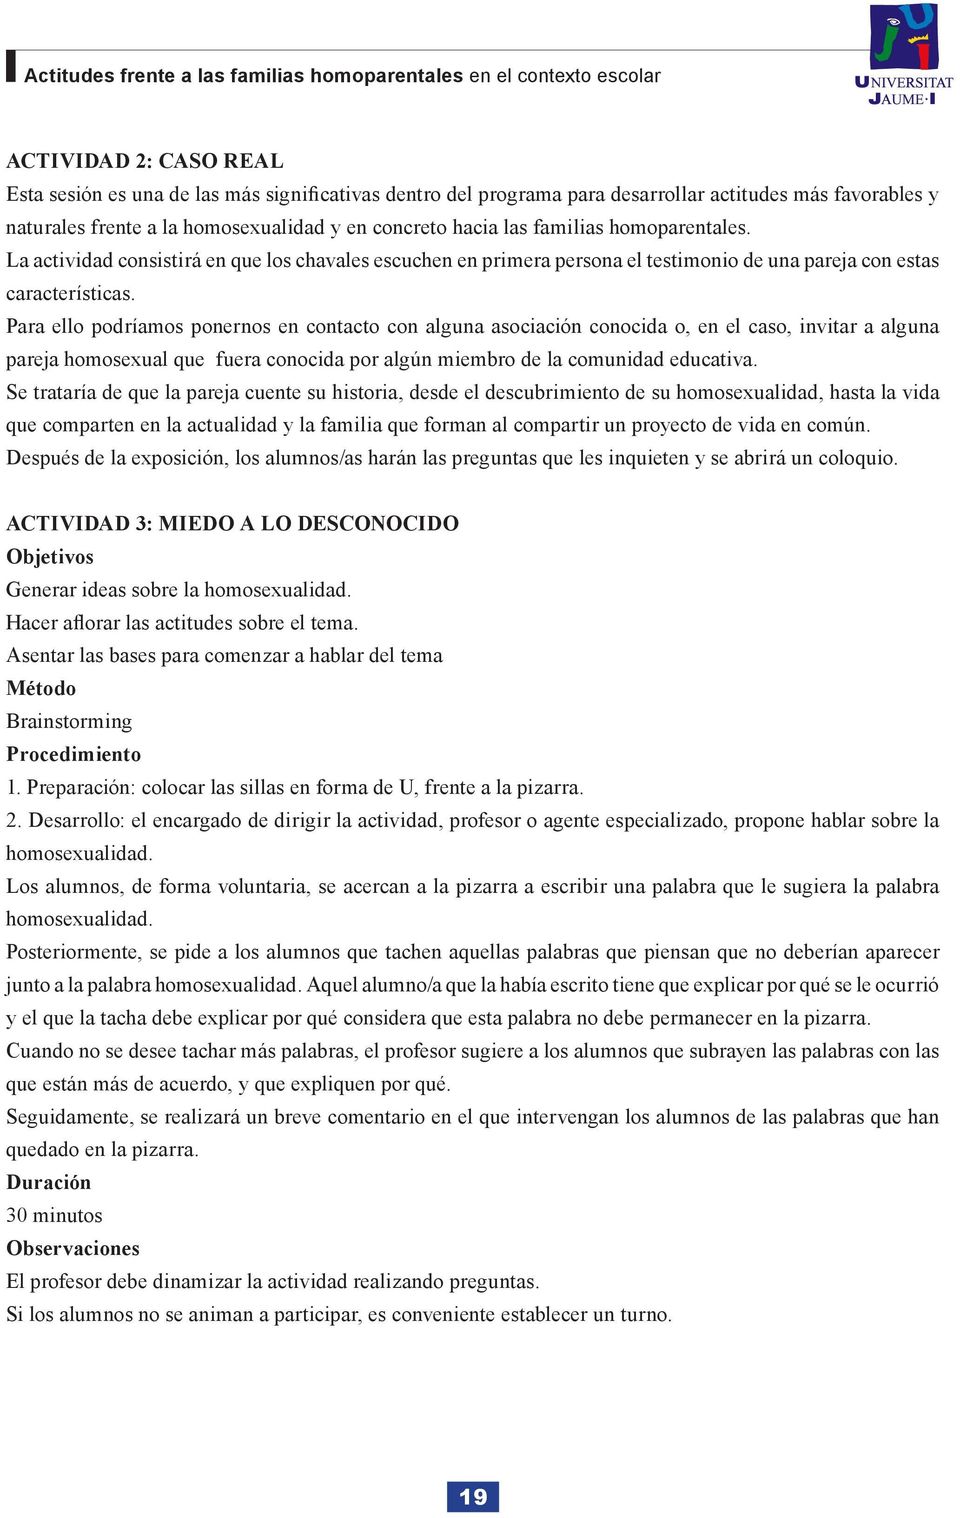 ACTITUDES FRENTE A LAS FAMILIAS HOMOPARENTALES EN EL CONTEXTO ESCOLAR - PDF  Free Download